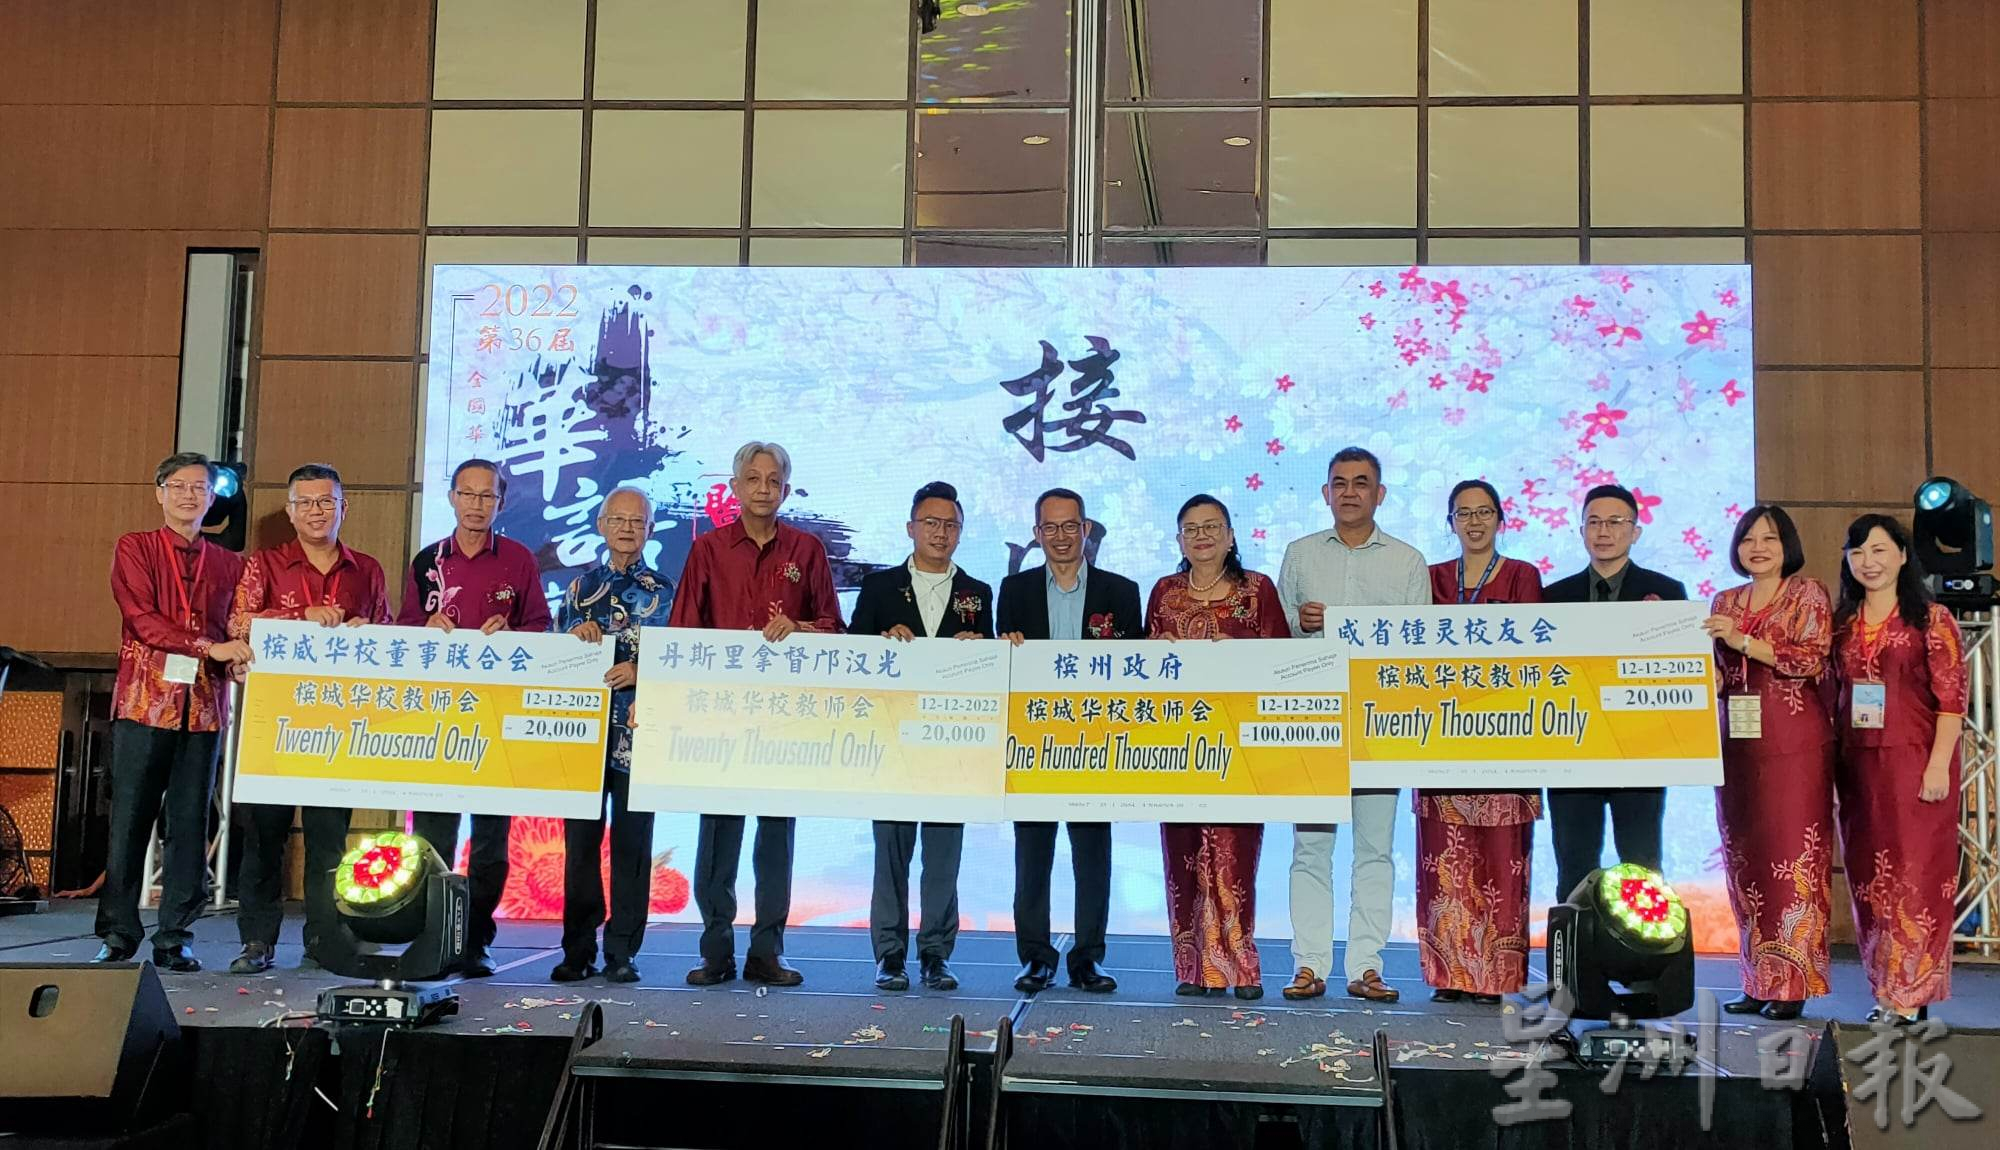 （大北马）槟州议长拿督刘子健说，华裔学习华语的动机应该是承载文化传承的使命，而非经济价值